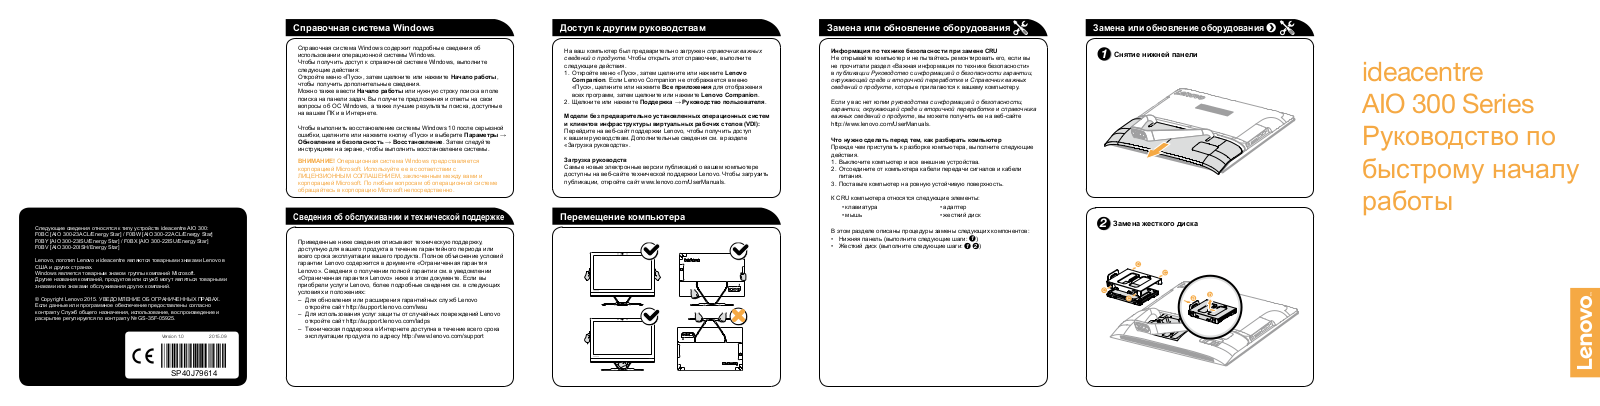 Lenovo ideacentre AIO 300 User Manual